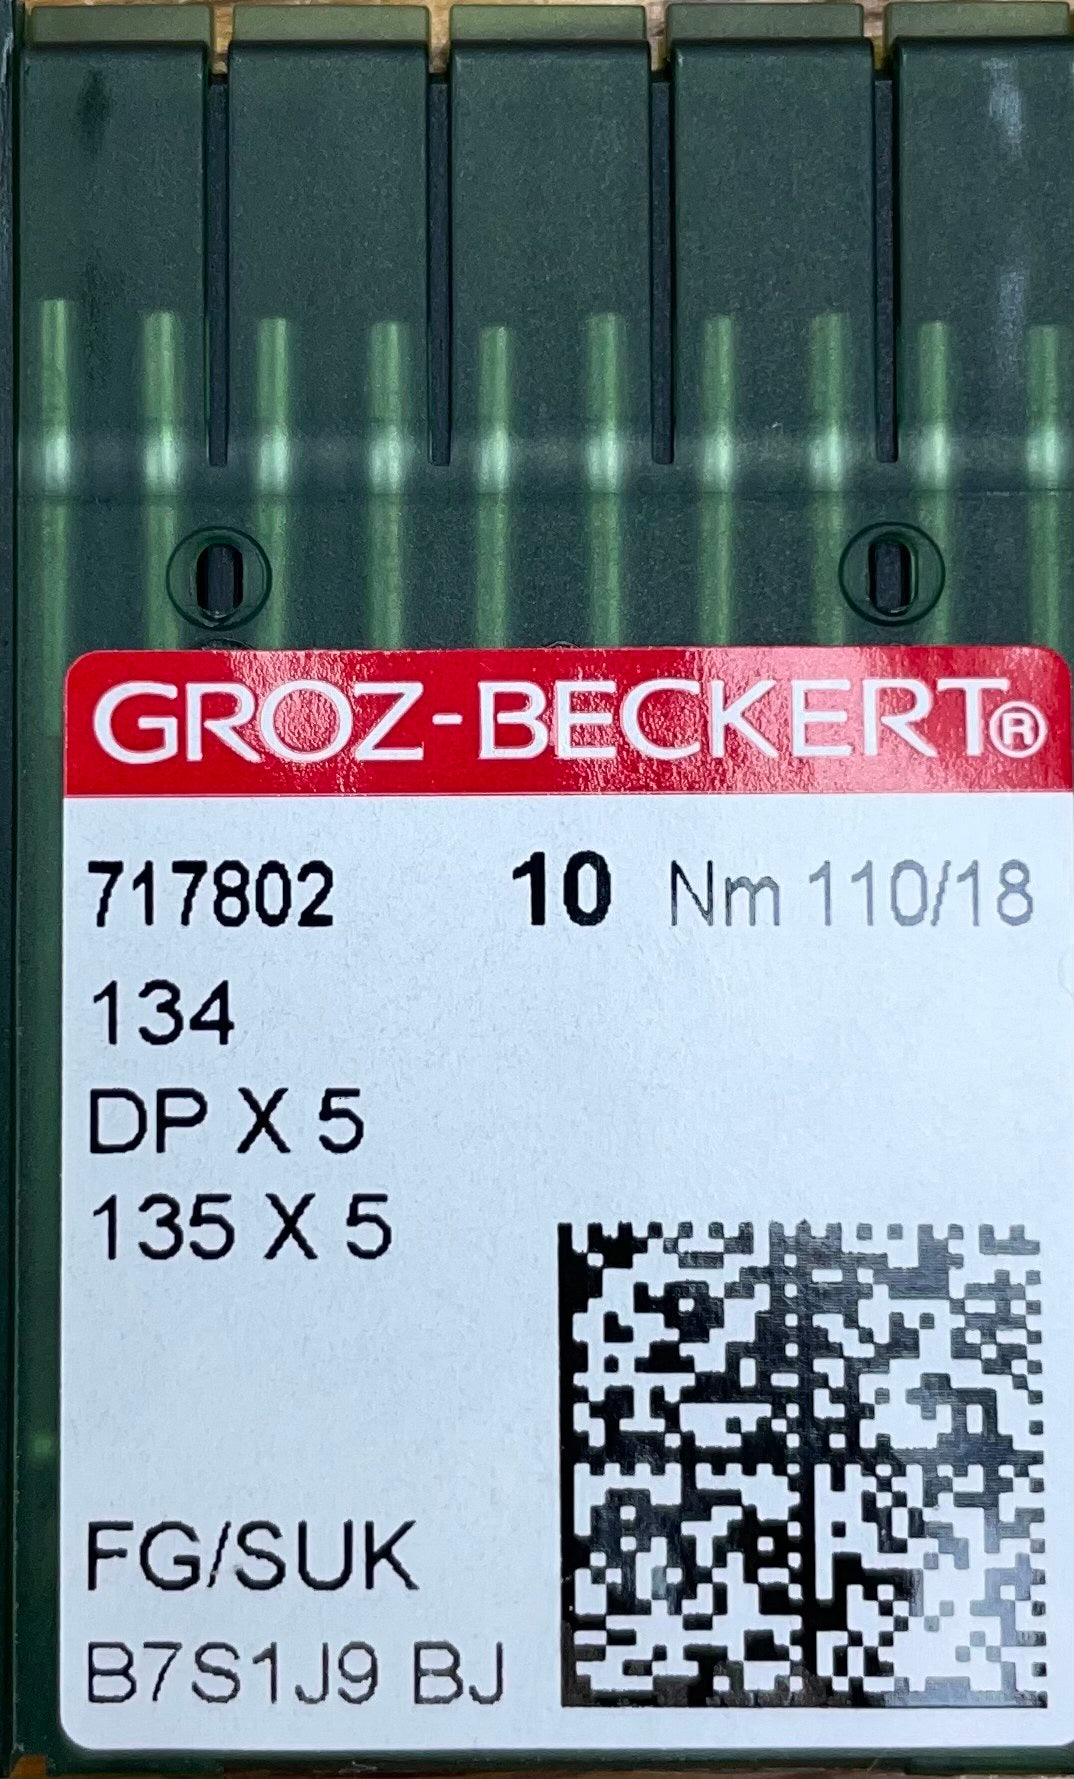 Groz-Beckert Needles 134 #110/18